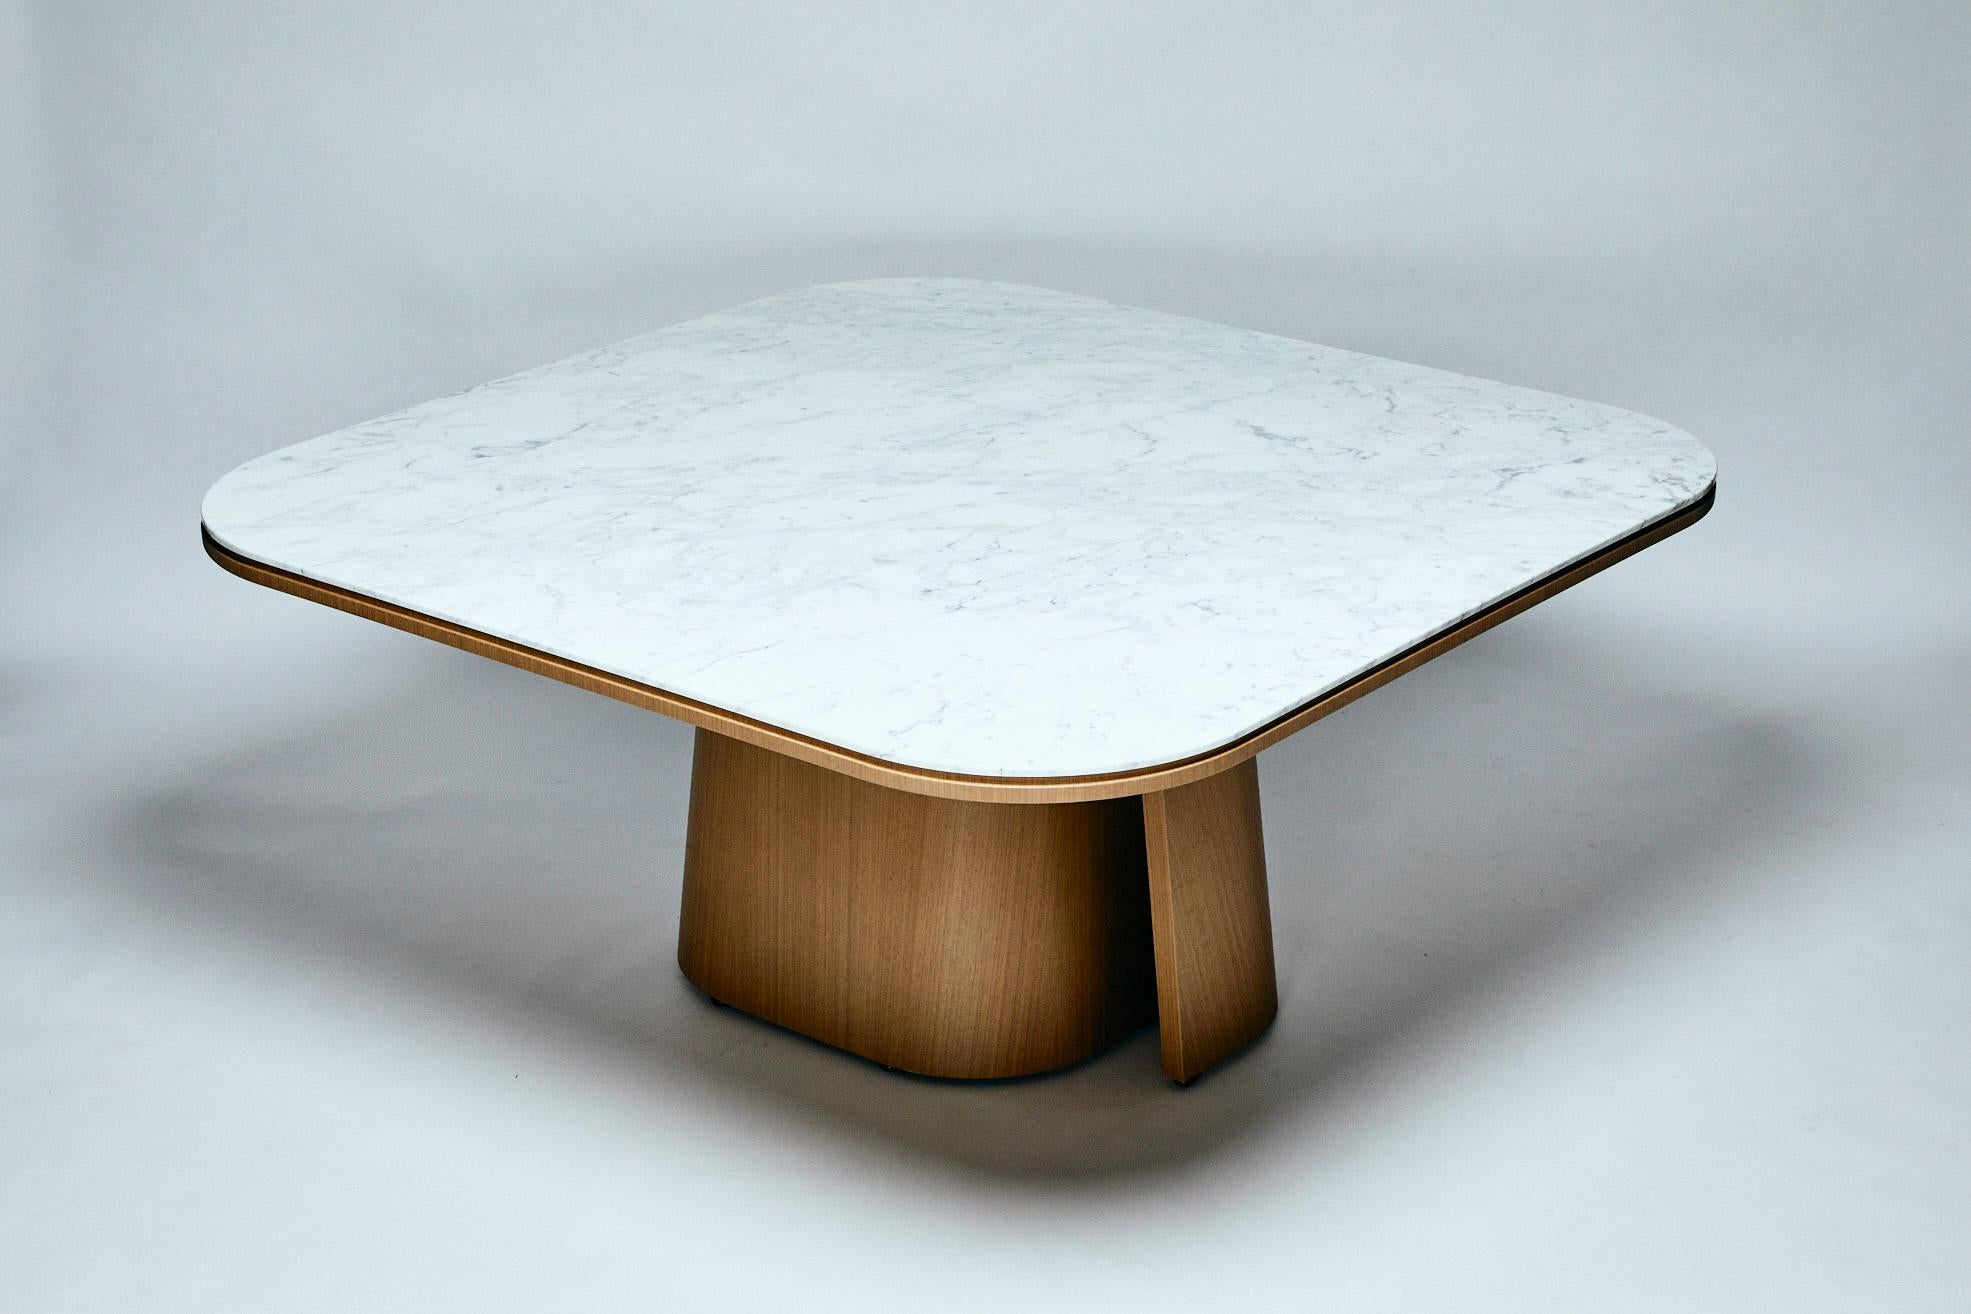 La table OOMA reflète la recherche par Reda Amalou d'un équilibre parfait entre une ligne pure et le souci du détail. Les proportions de l'élégant plateau en marbre très fin, avec ses subtils détails de bordure, contrastent avec les solides pieds en